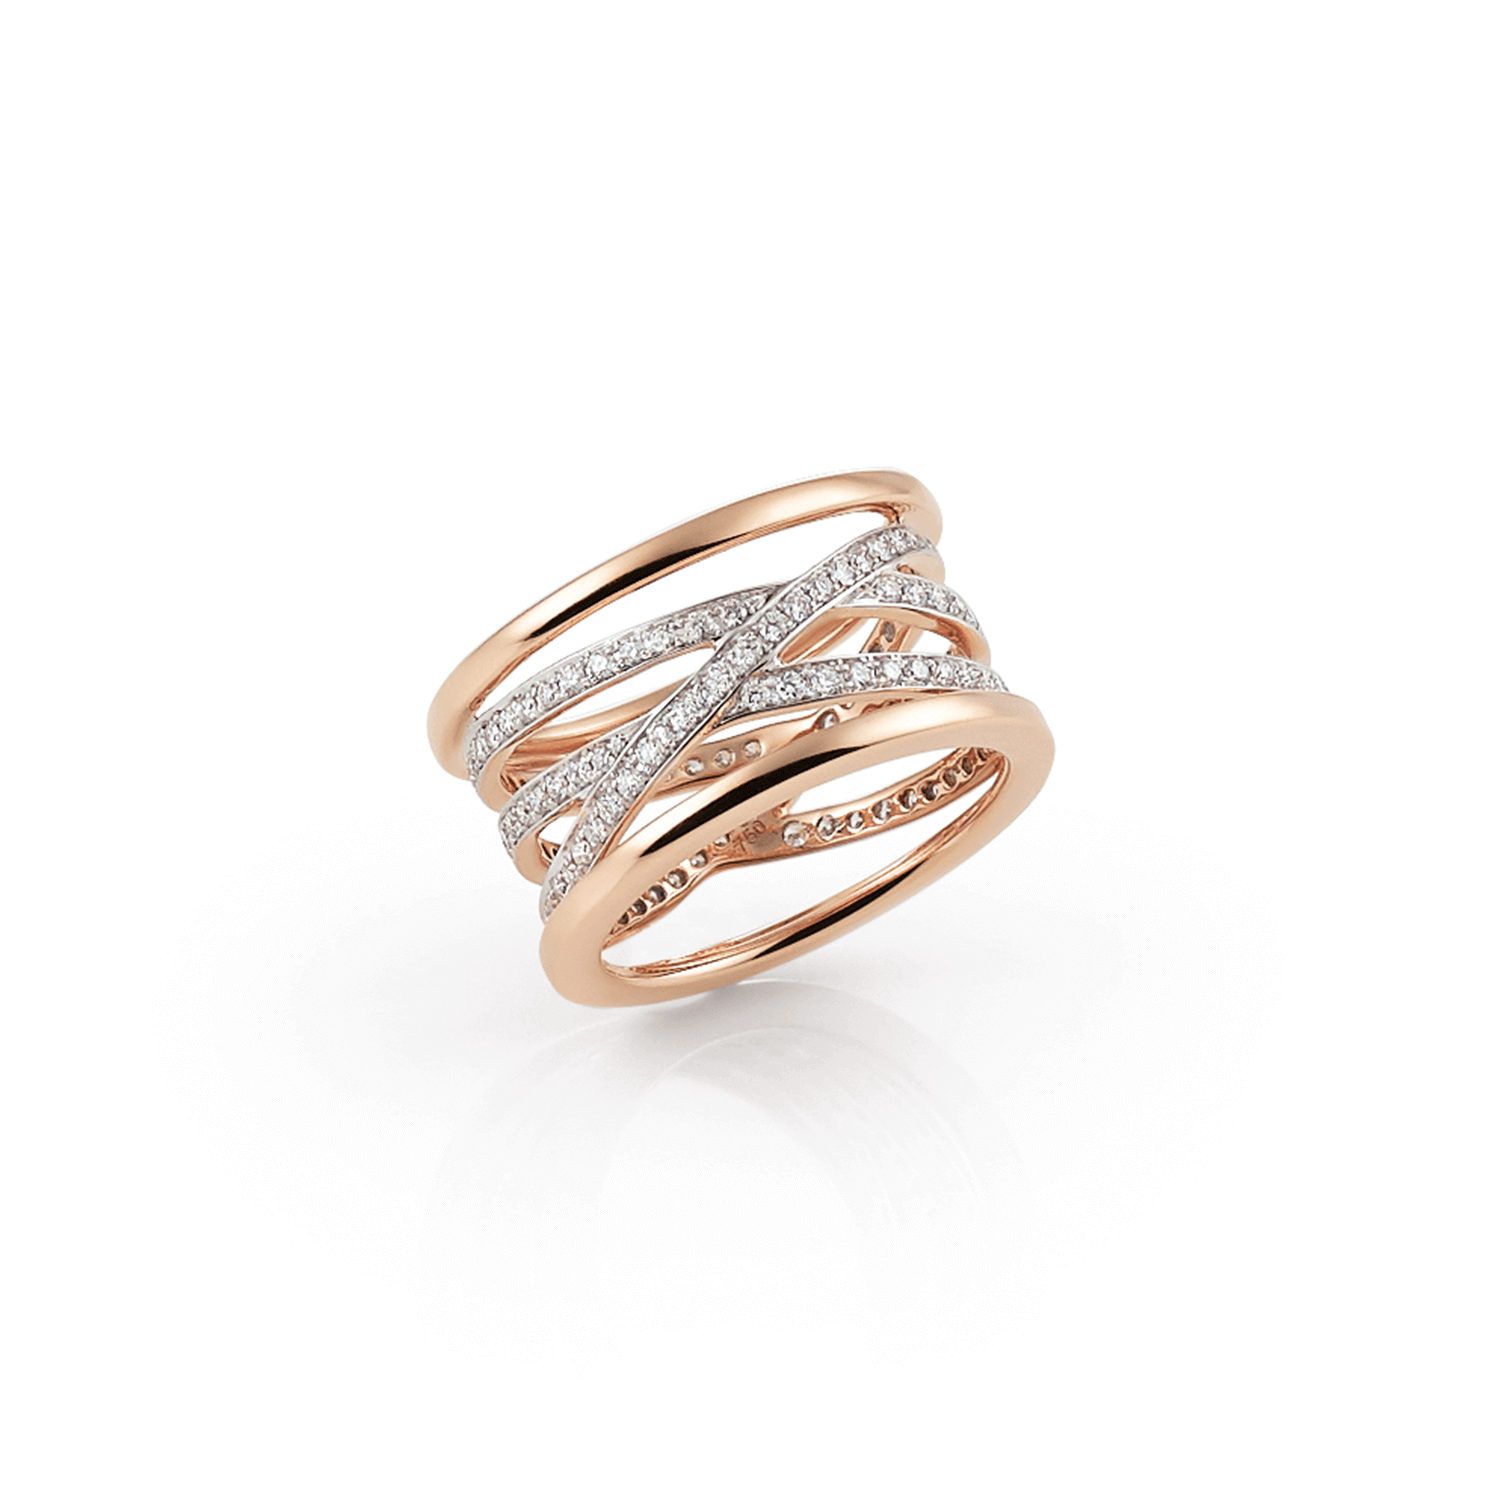 Serenata Ring in Rose Gold with Diamonds - Orsini Fine Jewellery